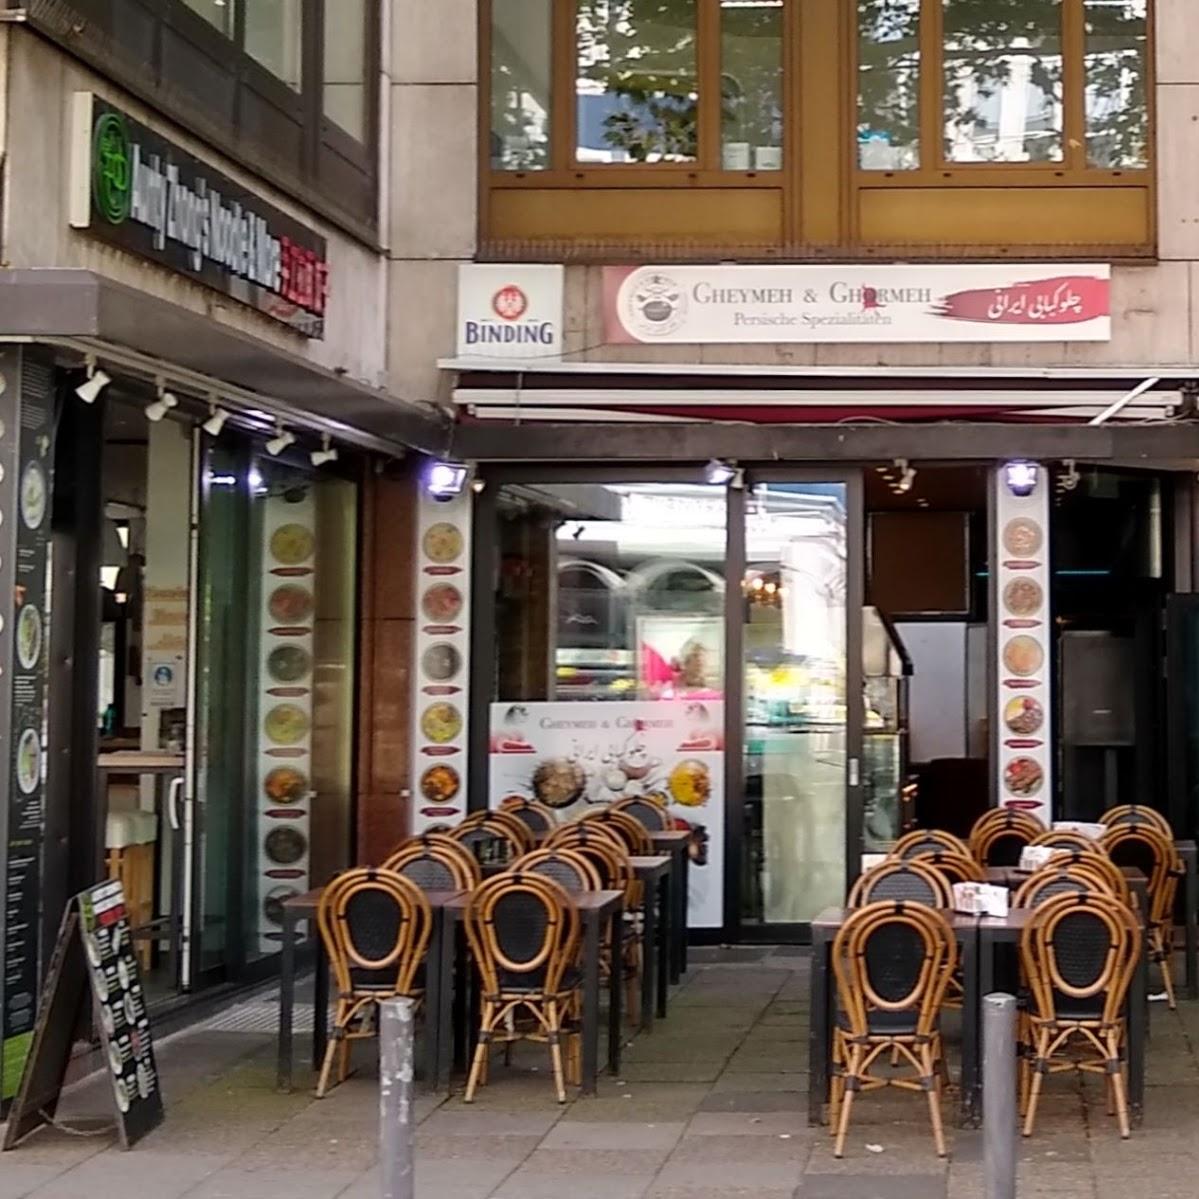 Restaurant "Gheymeh & Ghormeh" in Frankfurt am Main